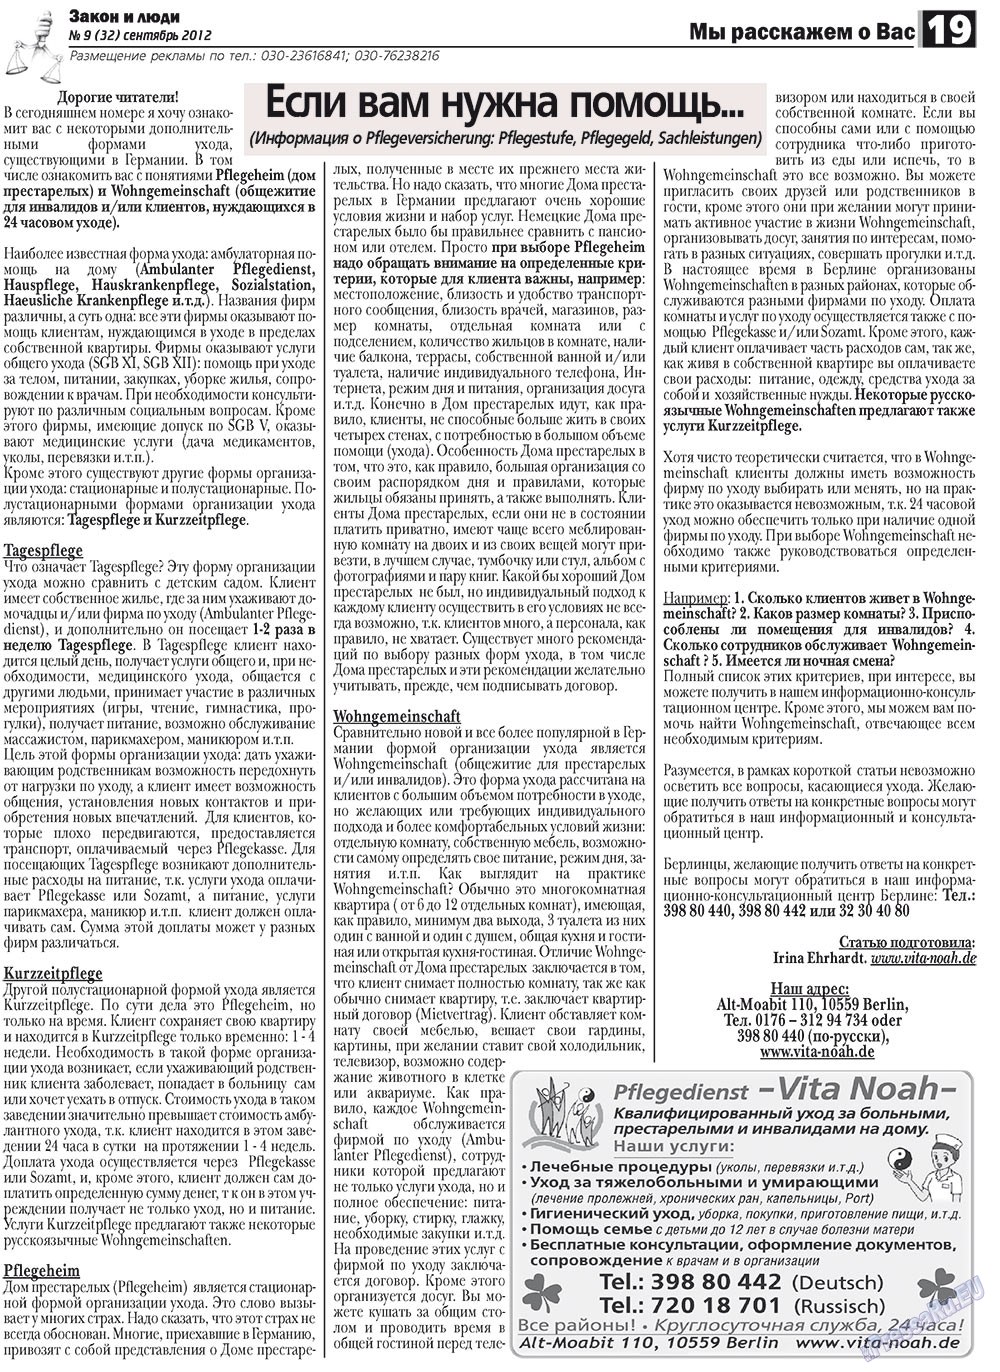 Закон и люди, газета. 2012 №9 стр.19